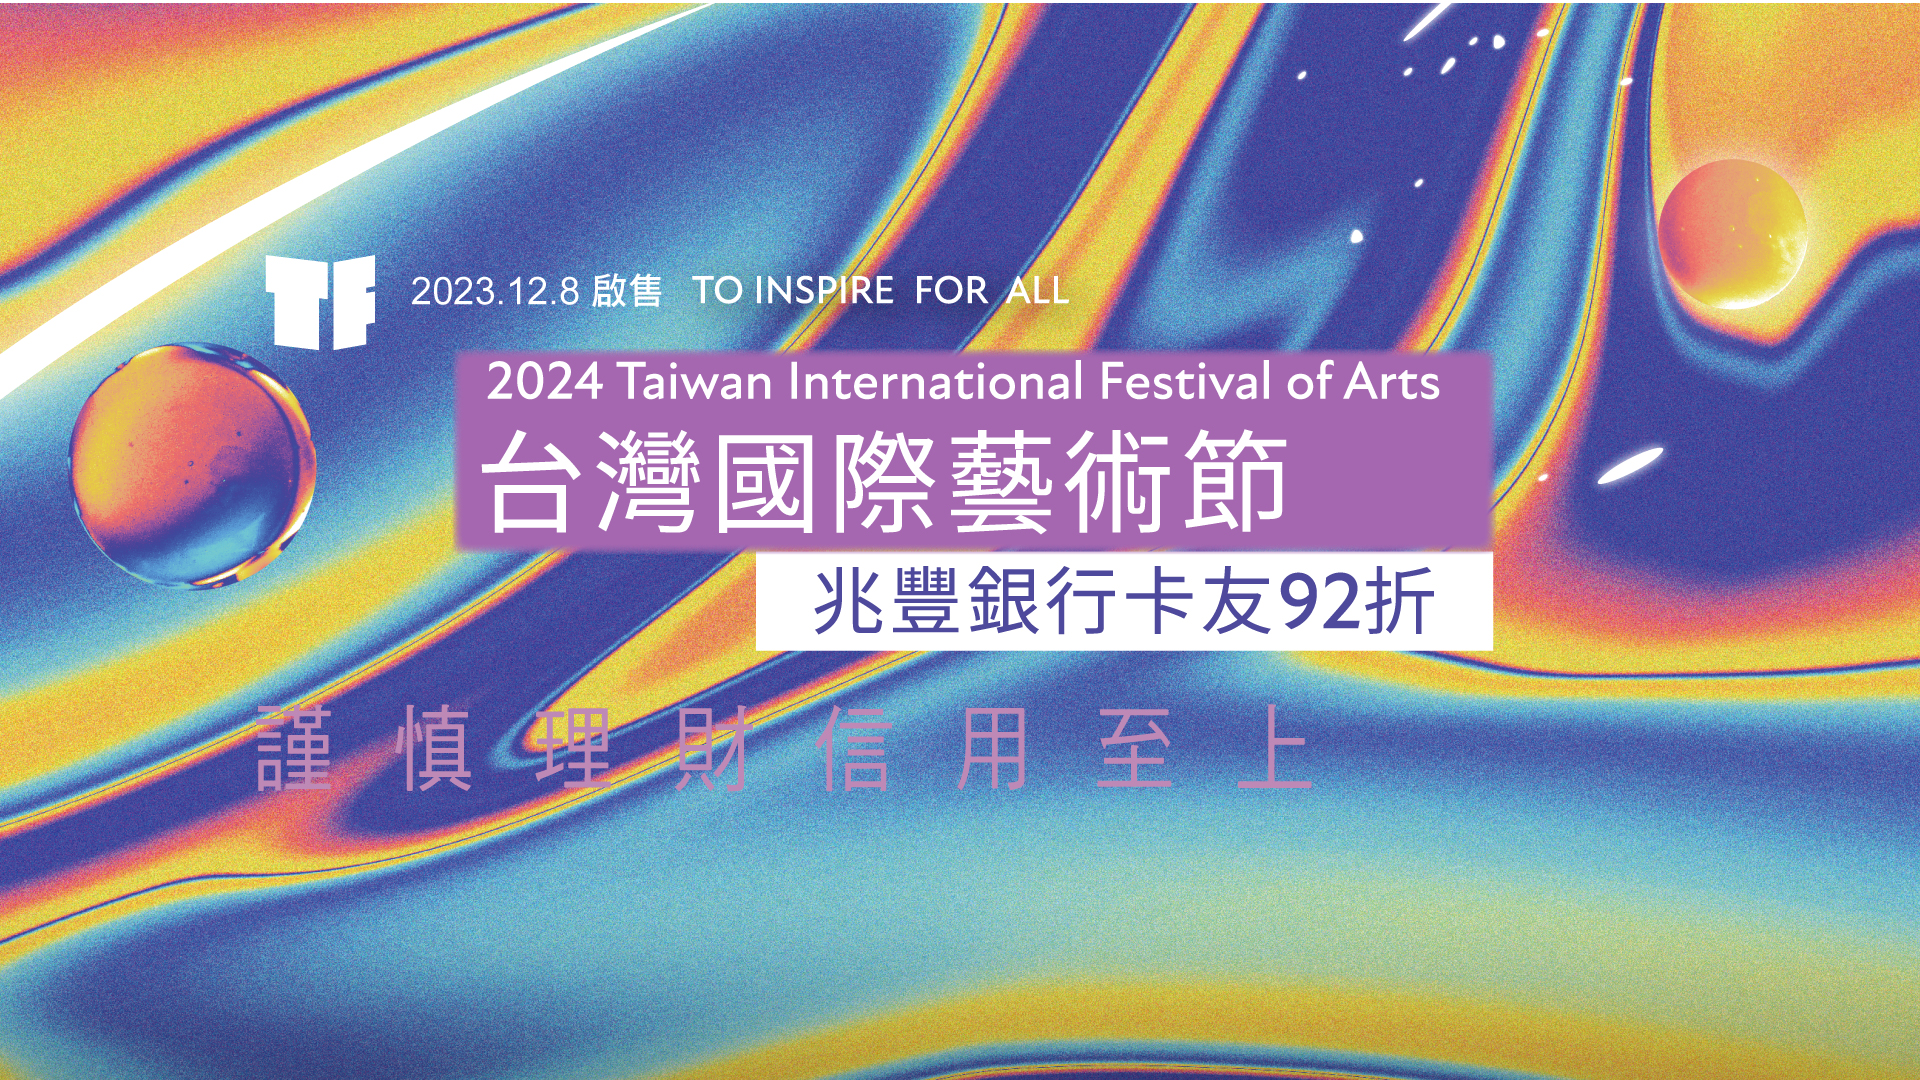 【國家兩廳院】TIFA台灣國際藝術節 兆豐卡友享92折